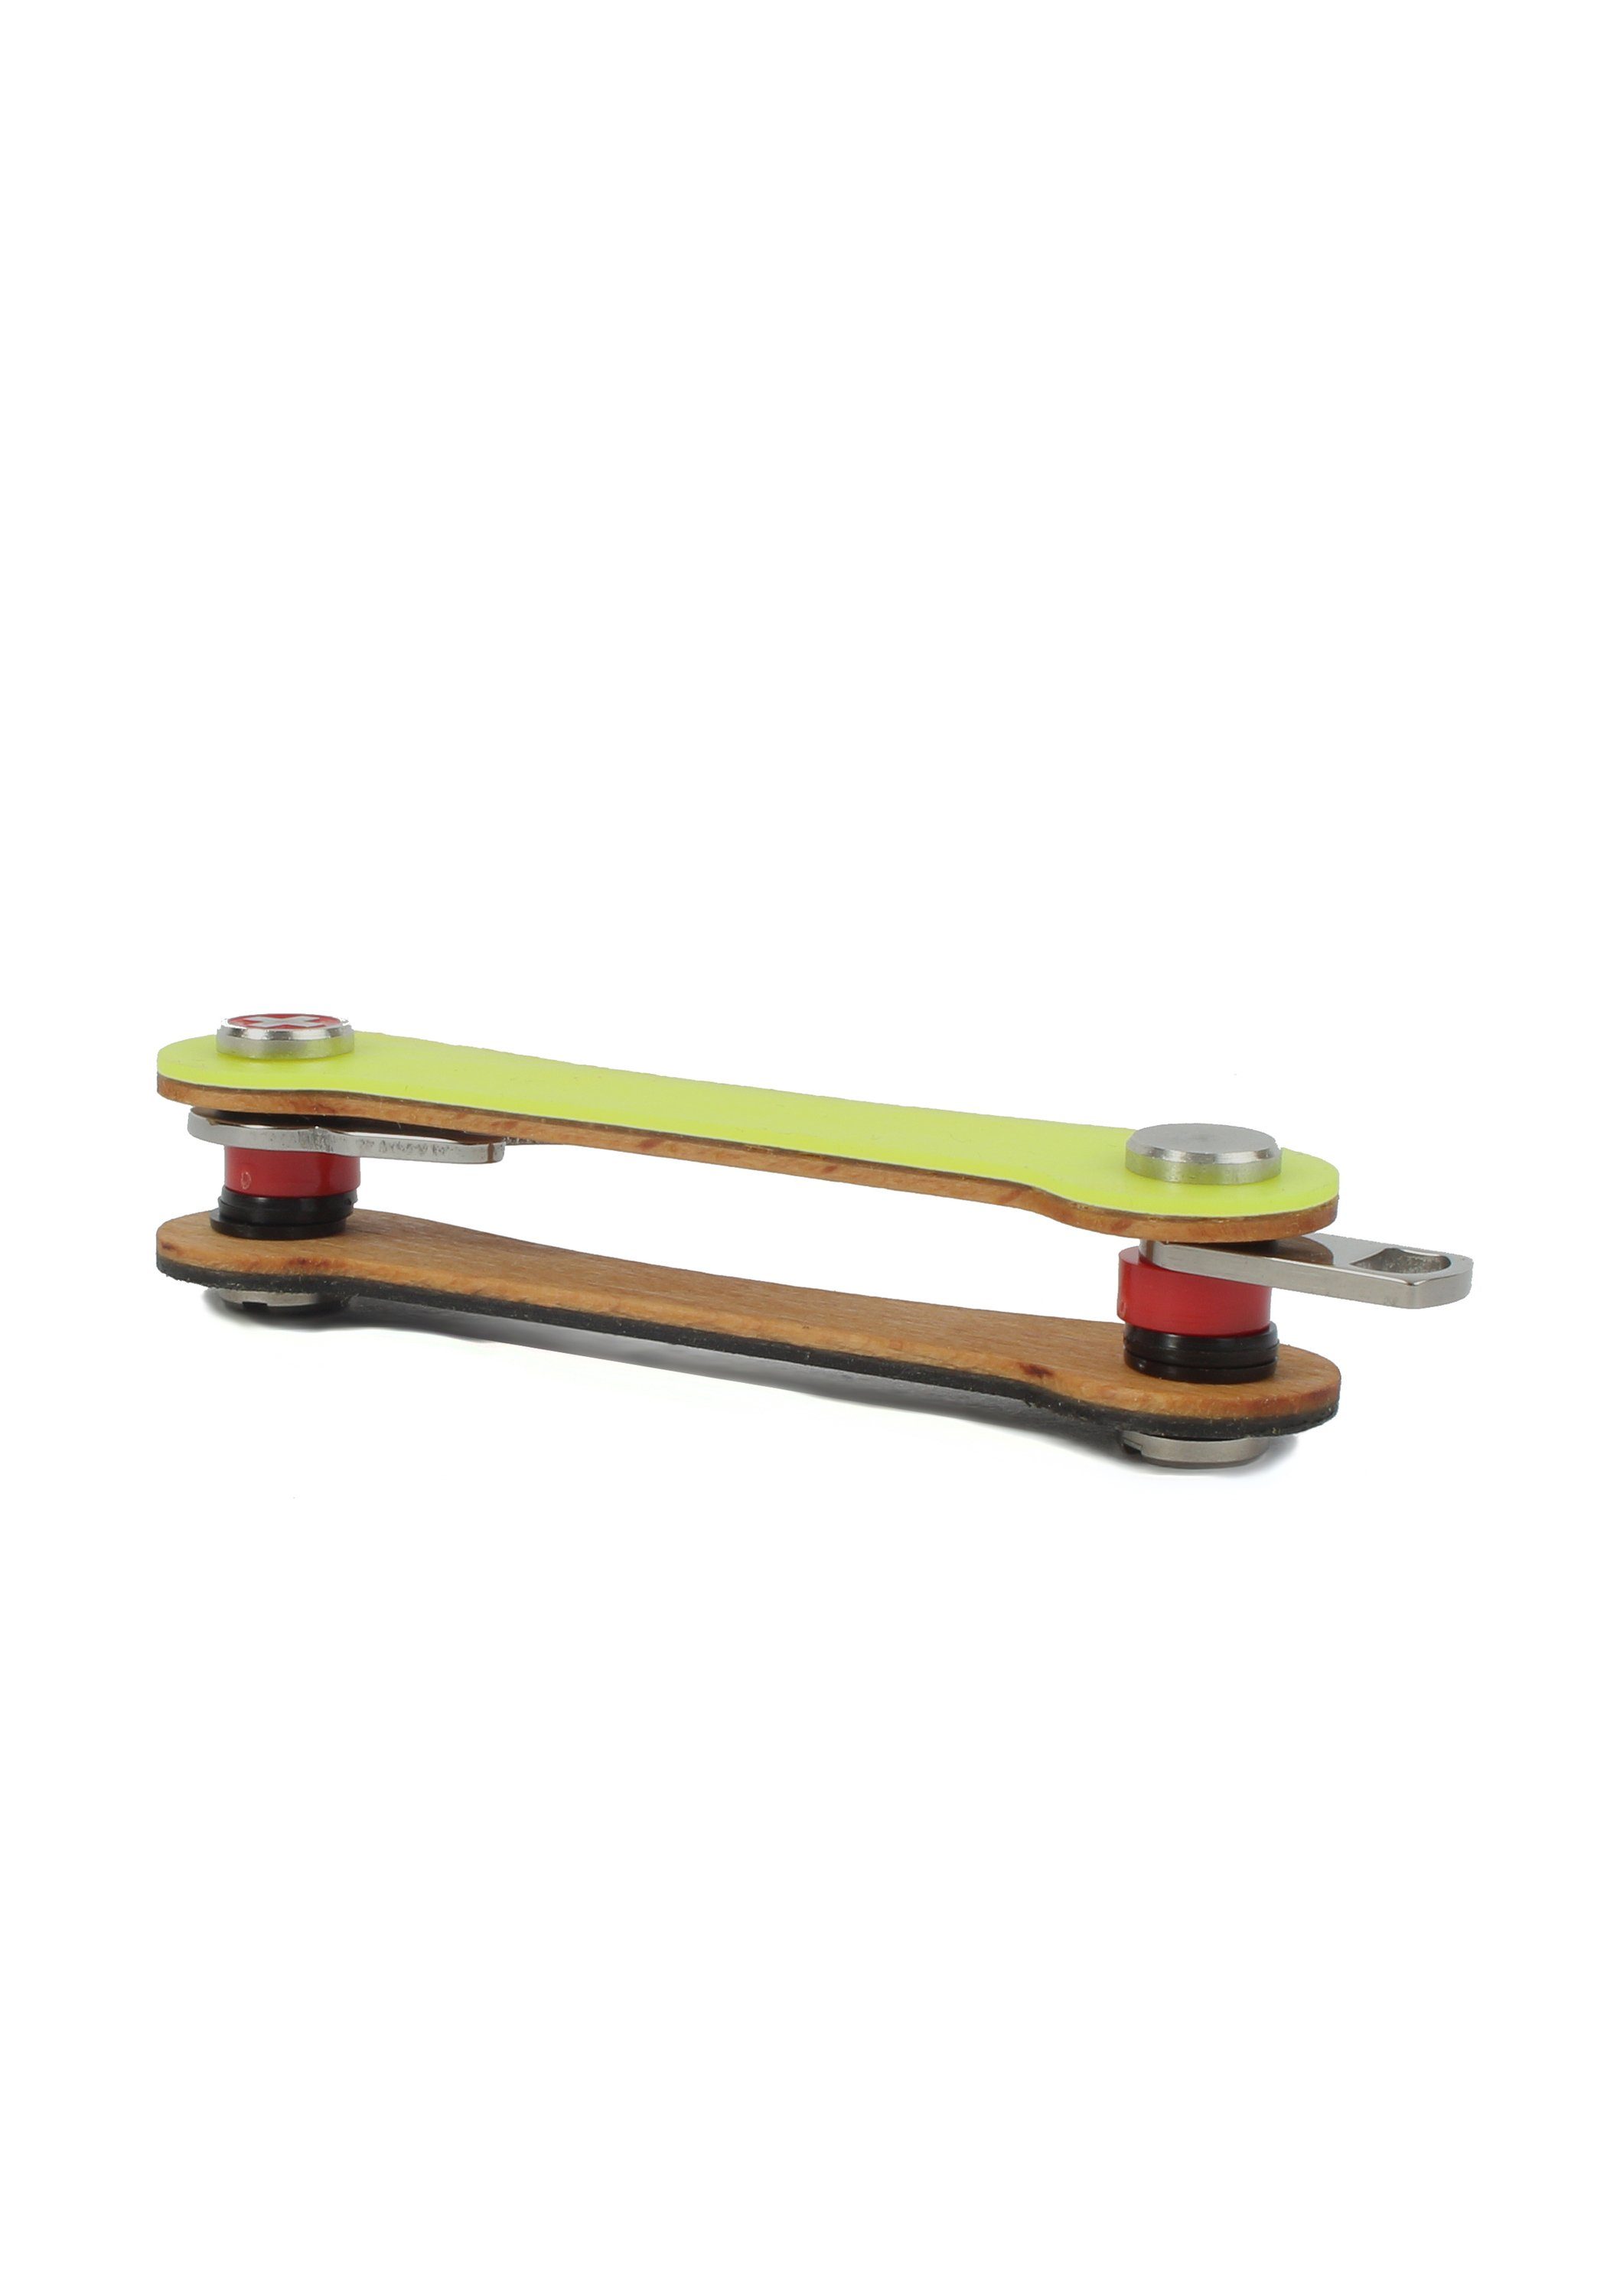 Snowboard-Ski keycabins Schlüsselanhänger S1, neon yellow SWISS made